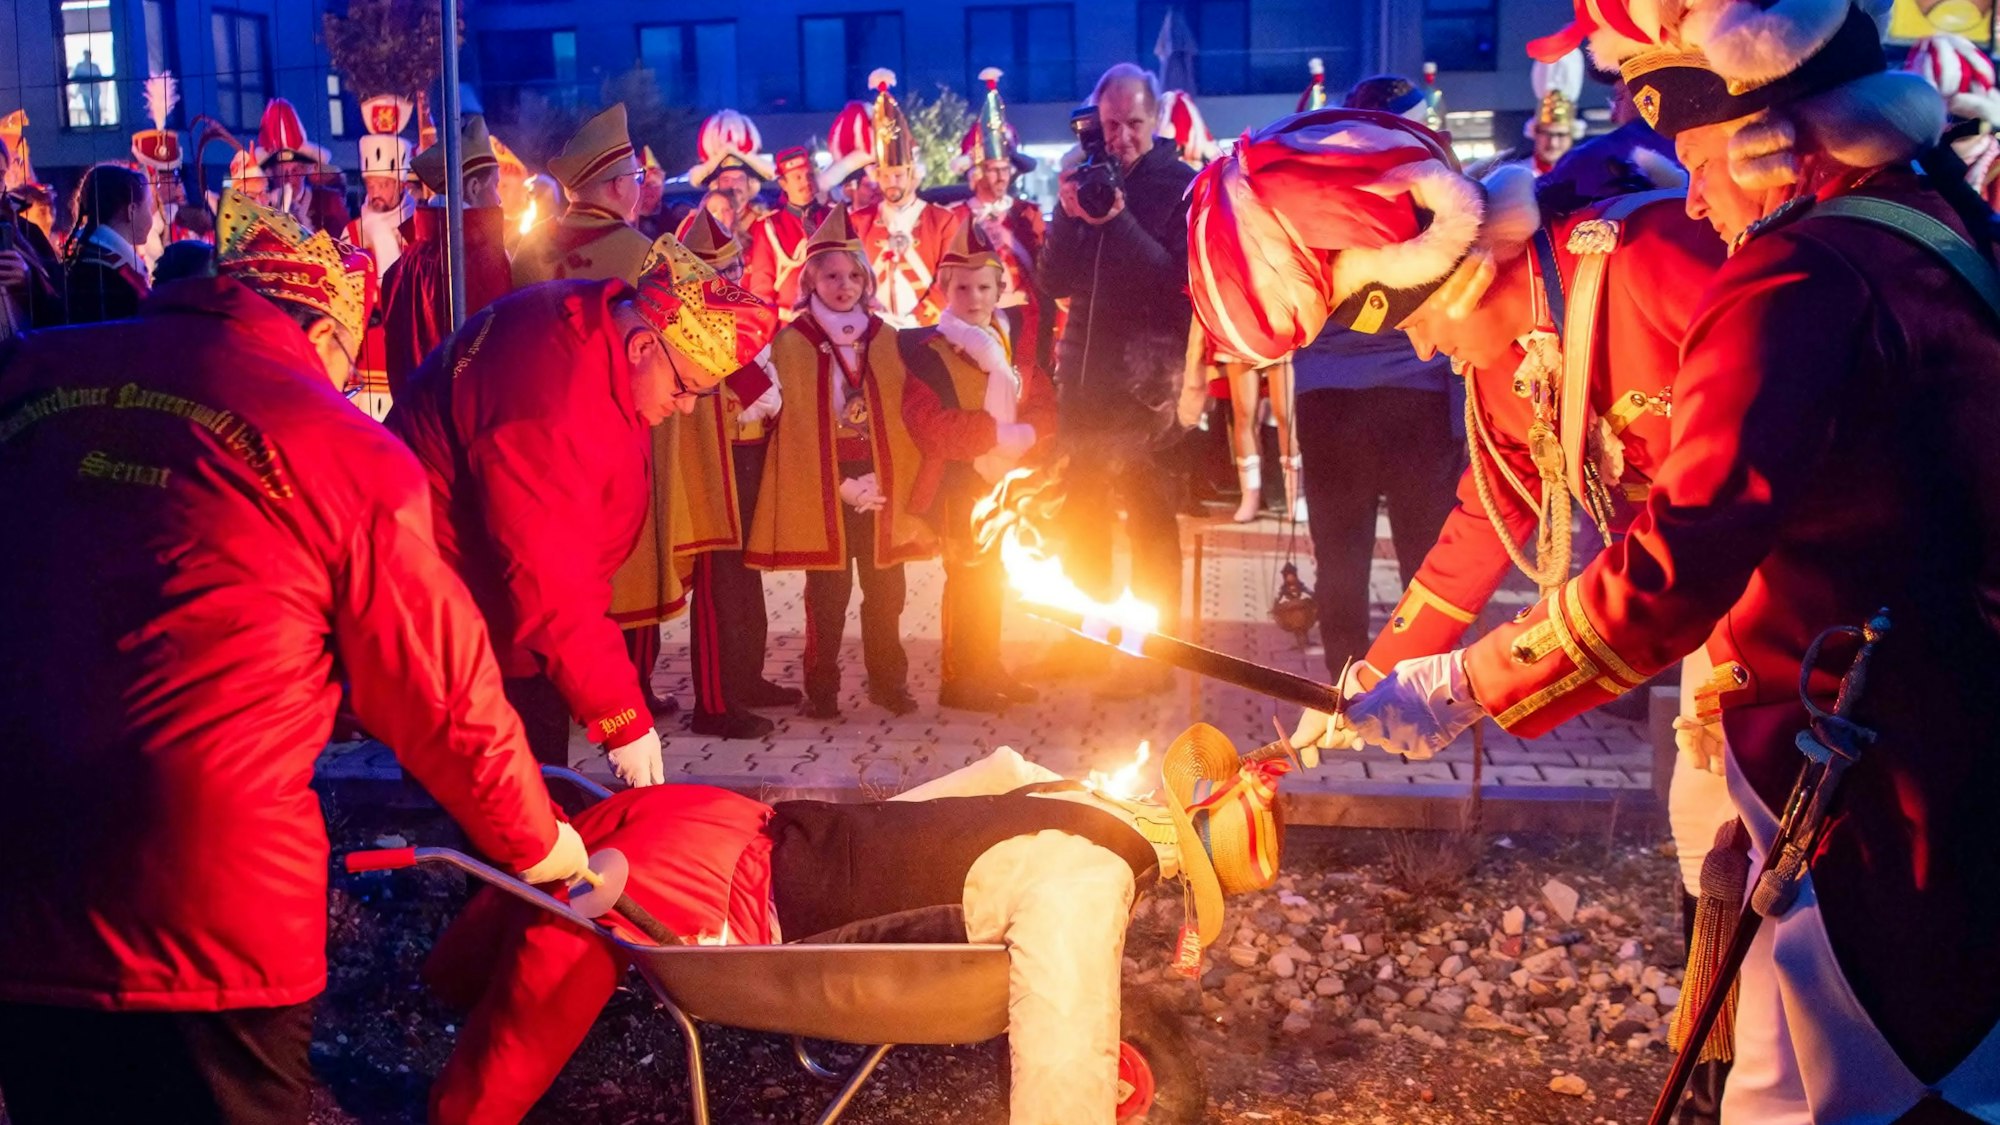 Die Männer der Euskirchener Karnevalsgesellschaft zünden mit einer brennenden Fackel den Nubbel – eine bekleidete Strohpuppe – an, die in einer Schubkarre liegt.